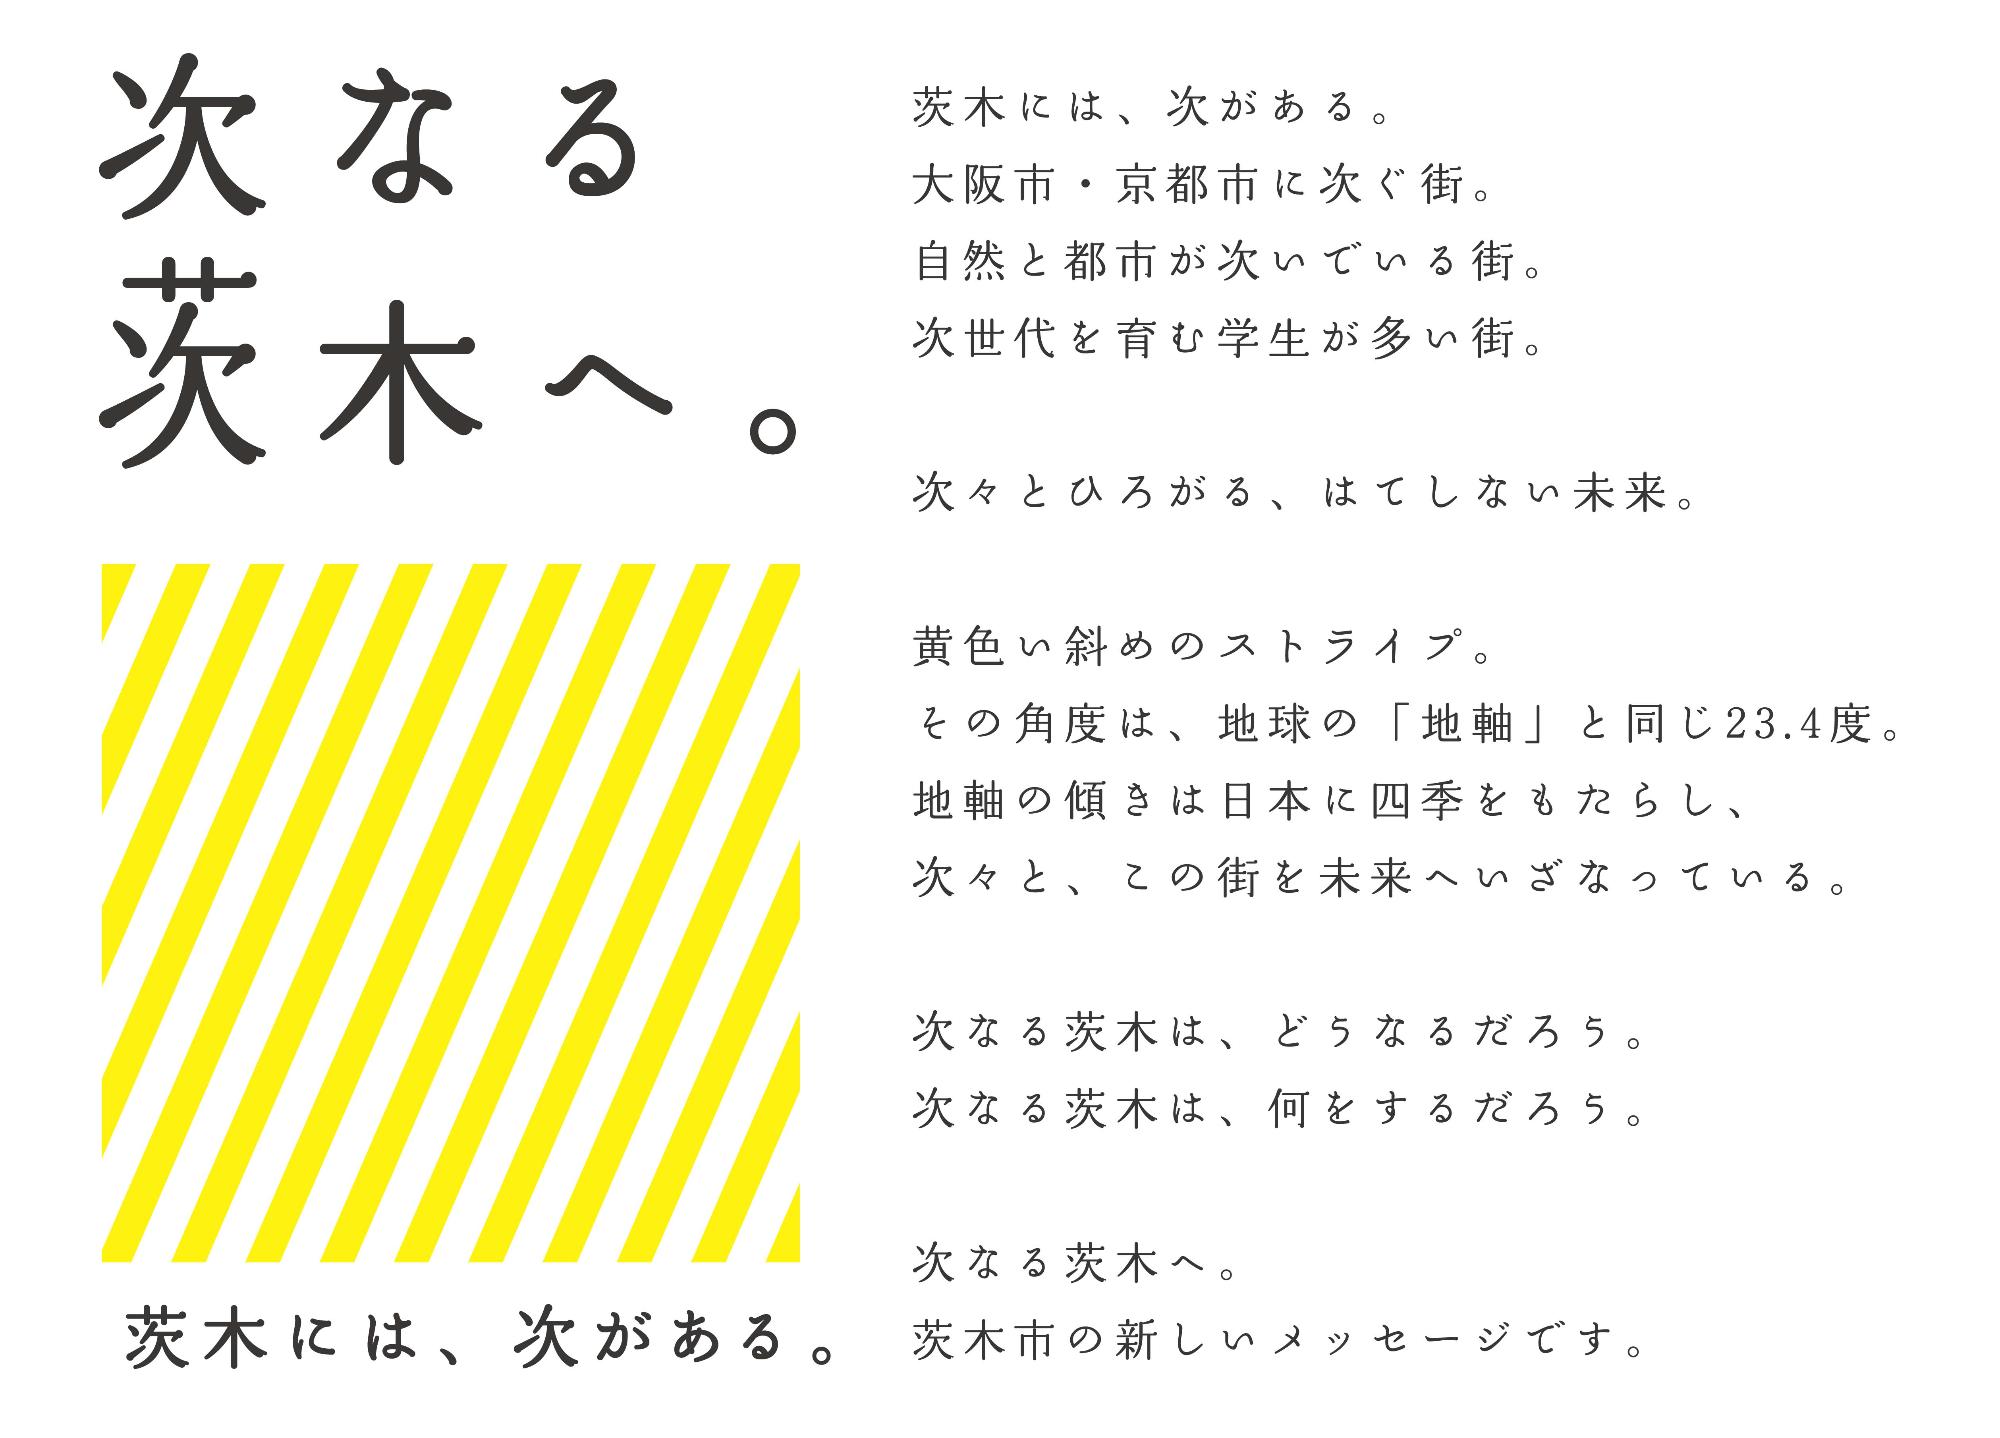 茨木市ブランドメッセージとボディコピー